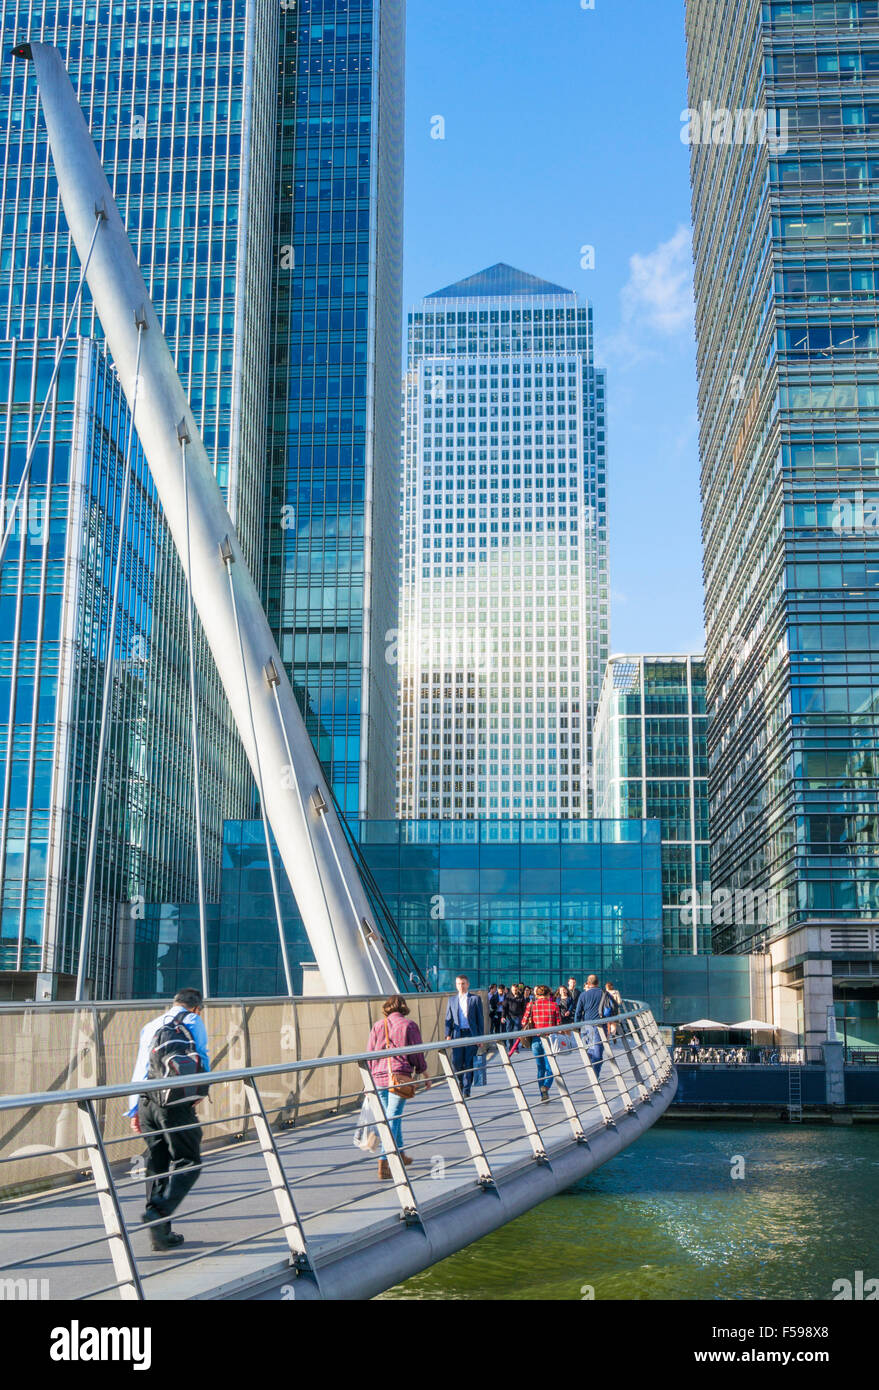 Canary Wharf grattacieli CBD quartiere delle banche e della finanza Docklands Londra Inghilterra REGNO UNITO GB EU Europe Foto Stock